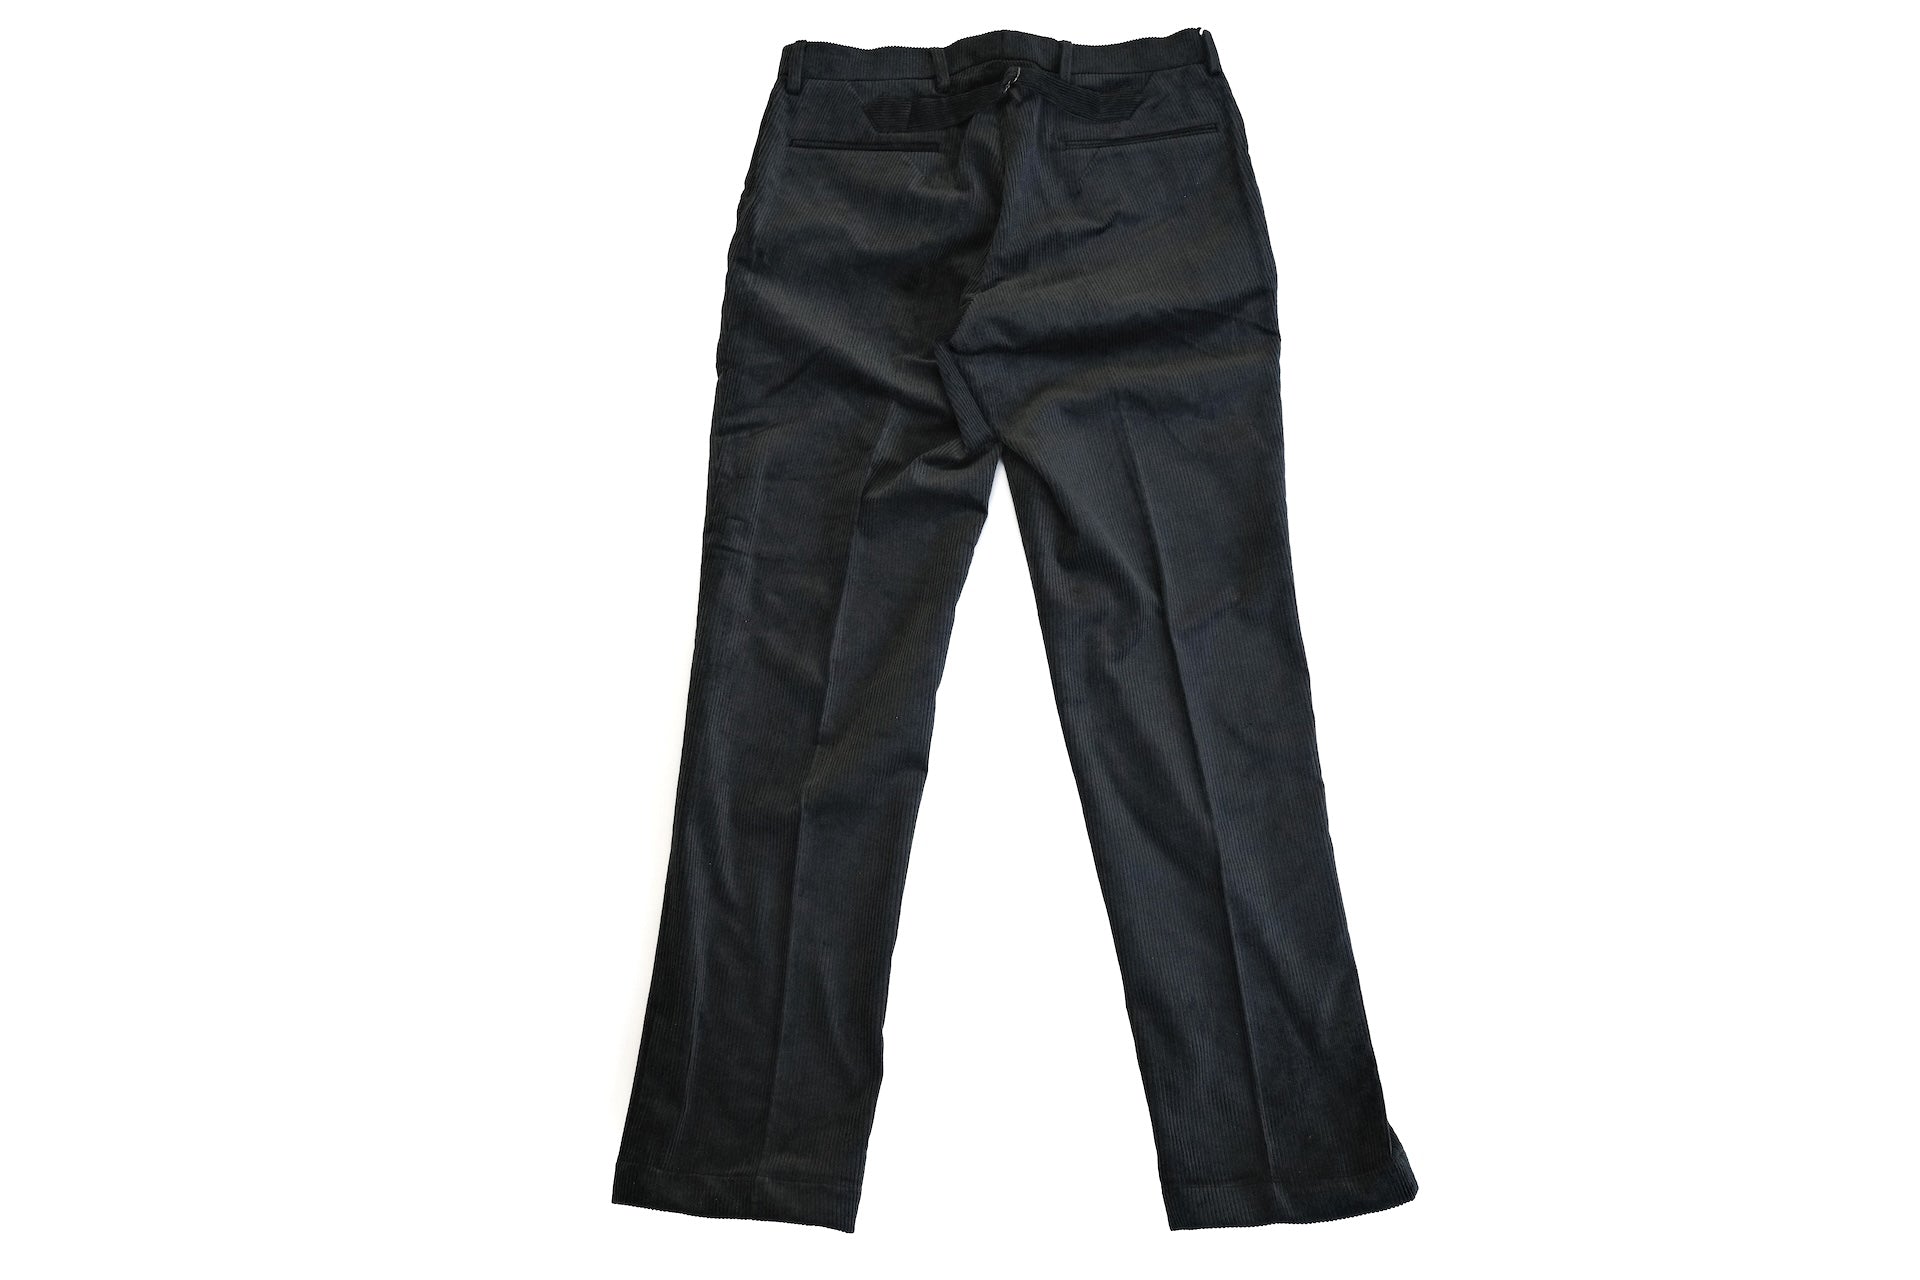 Freewheelers "Skagit" Corduroy Trousers (Black)